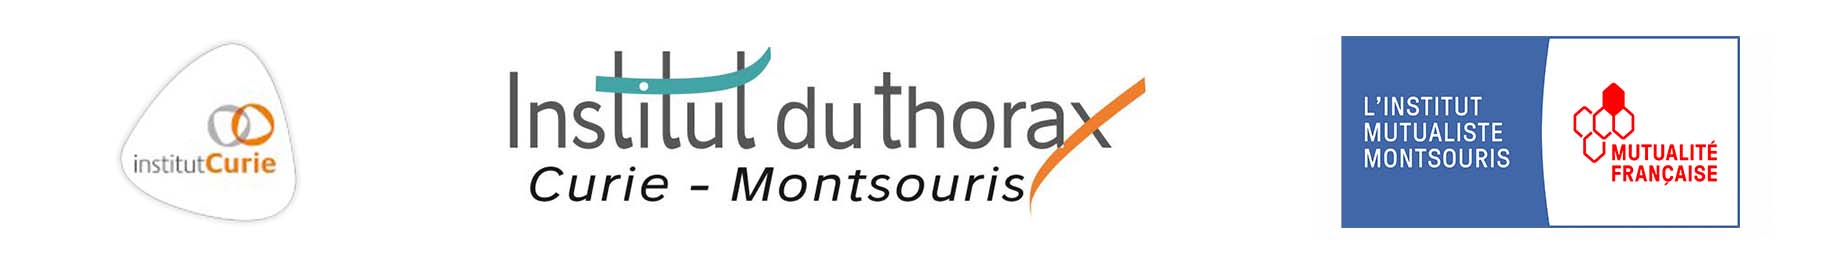 Institut du Thorax - Curie - Montsouris